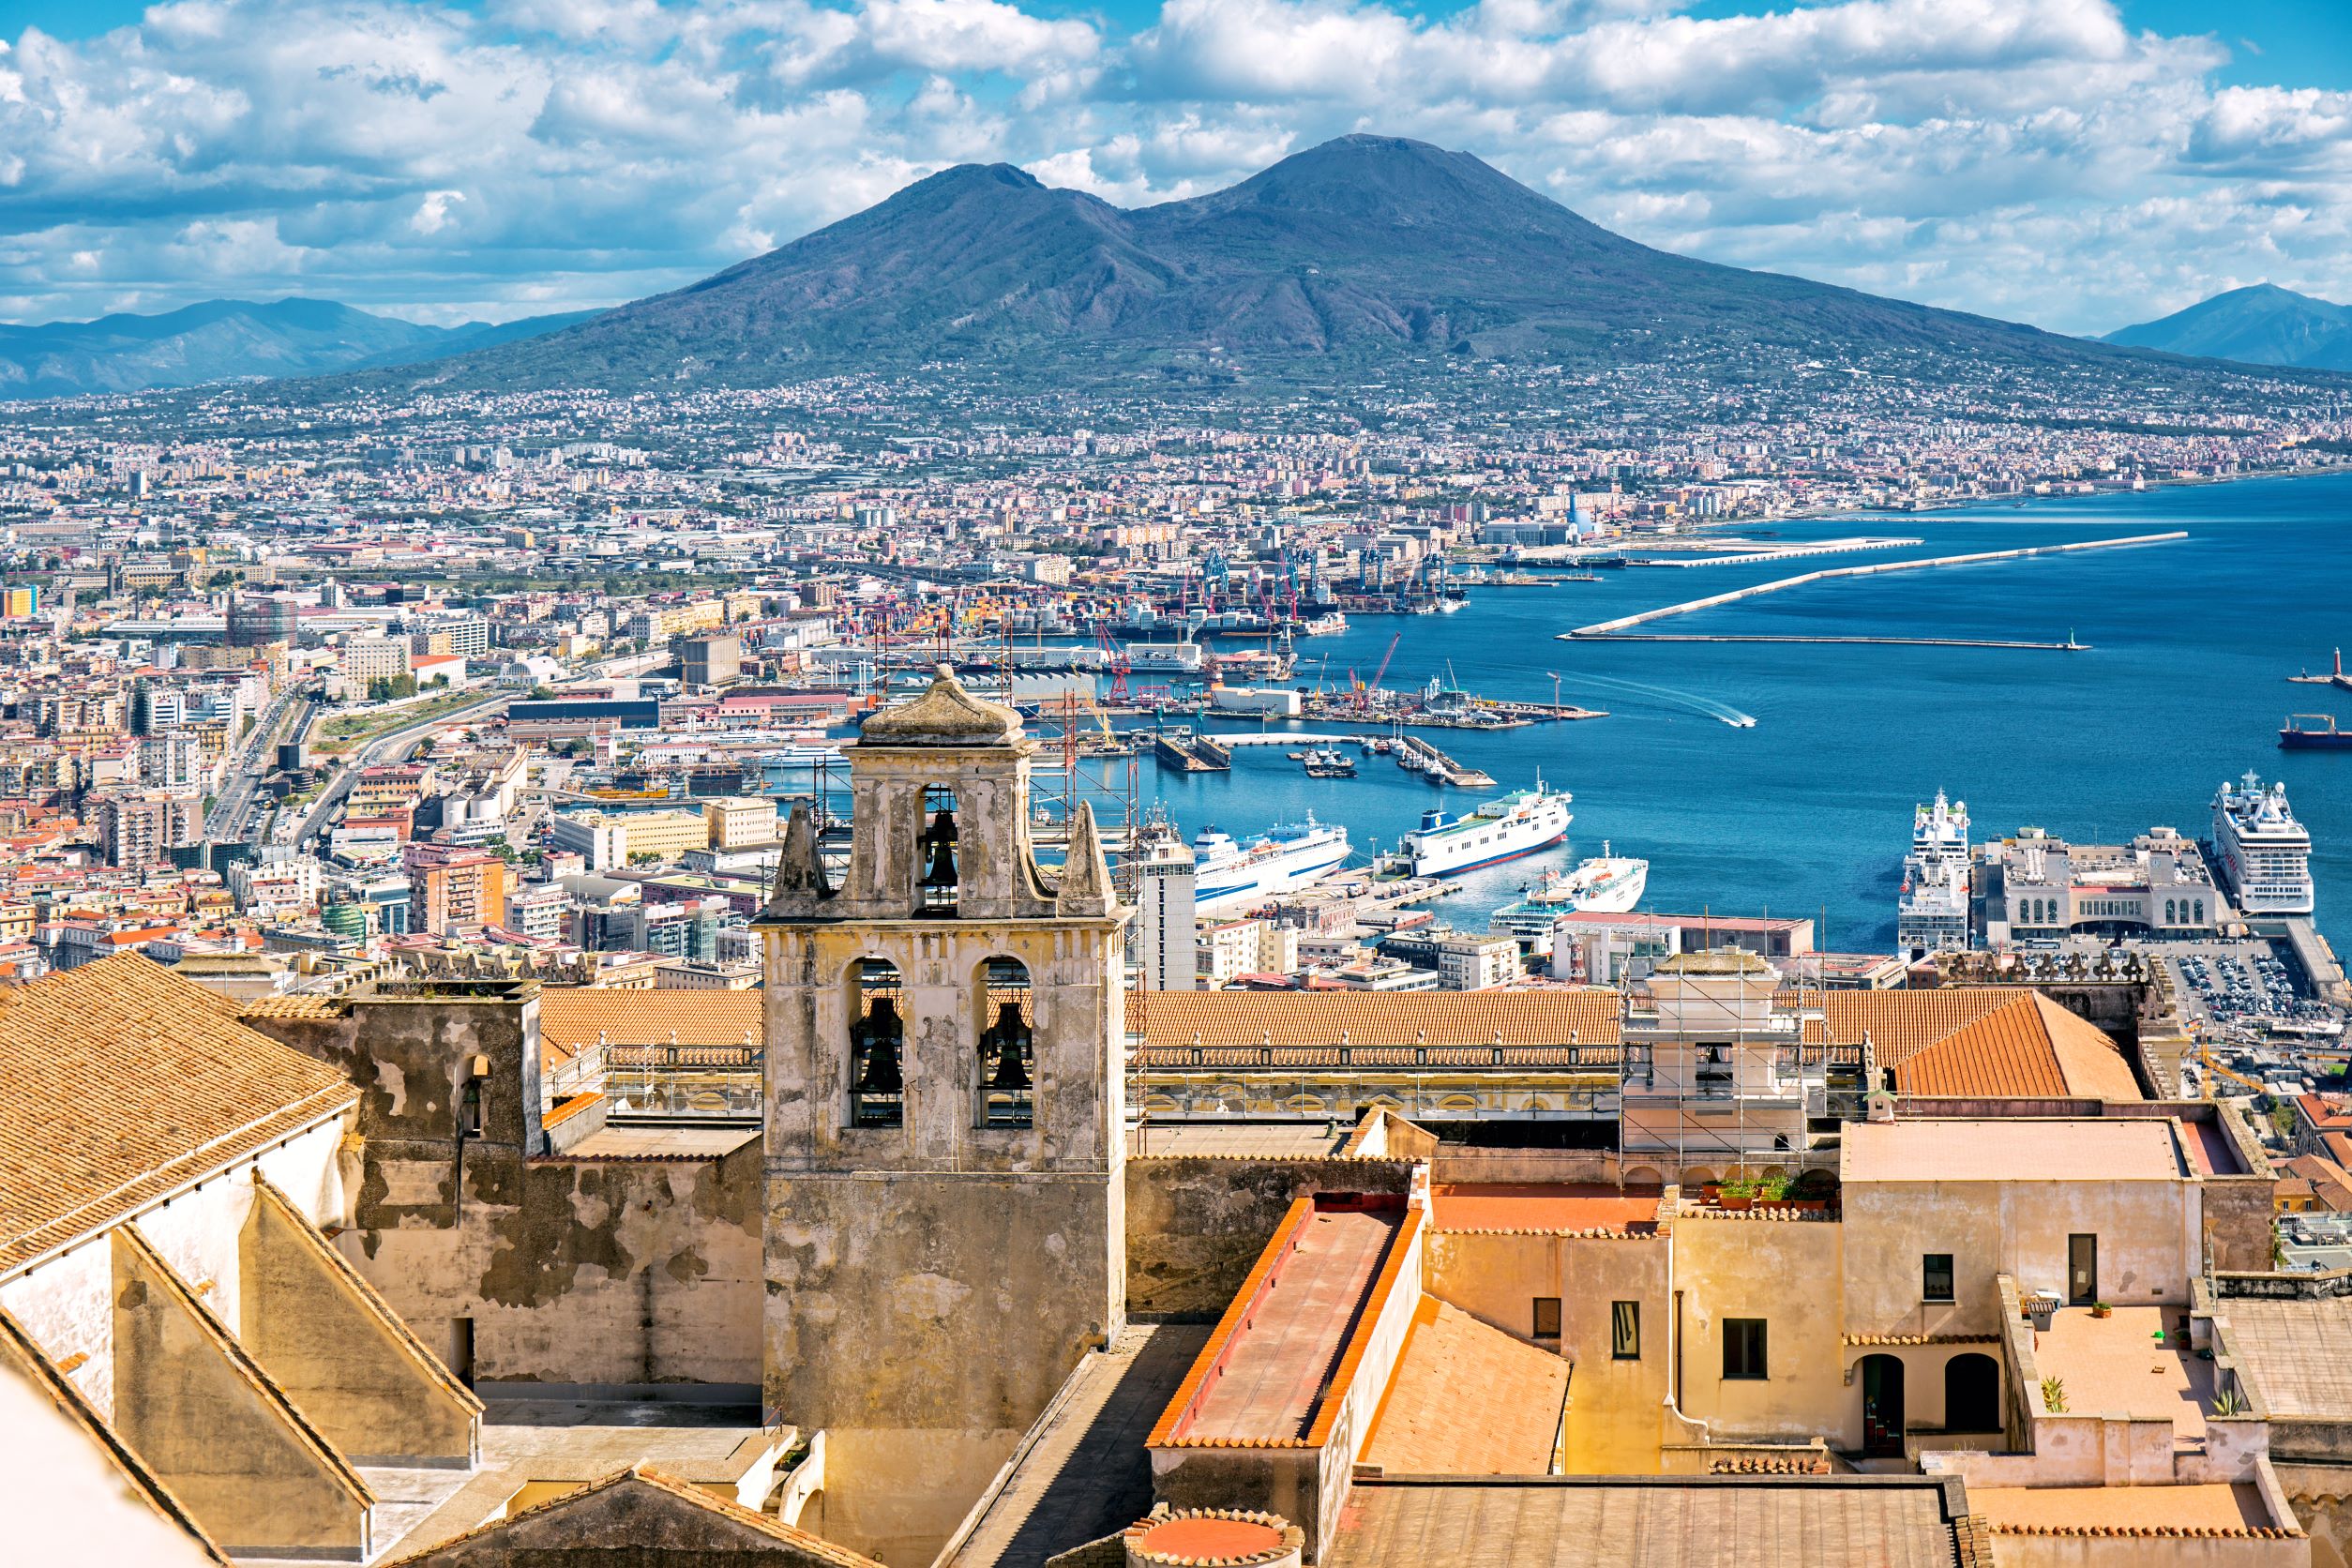 Il meglio di Napoli: una città italiana con una ricca storia e meraviglie architettoniche